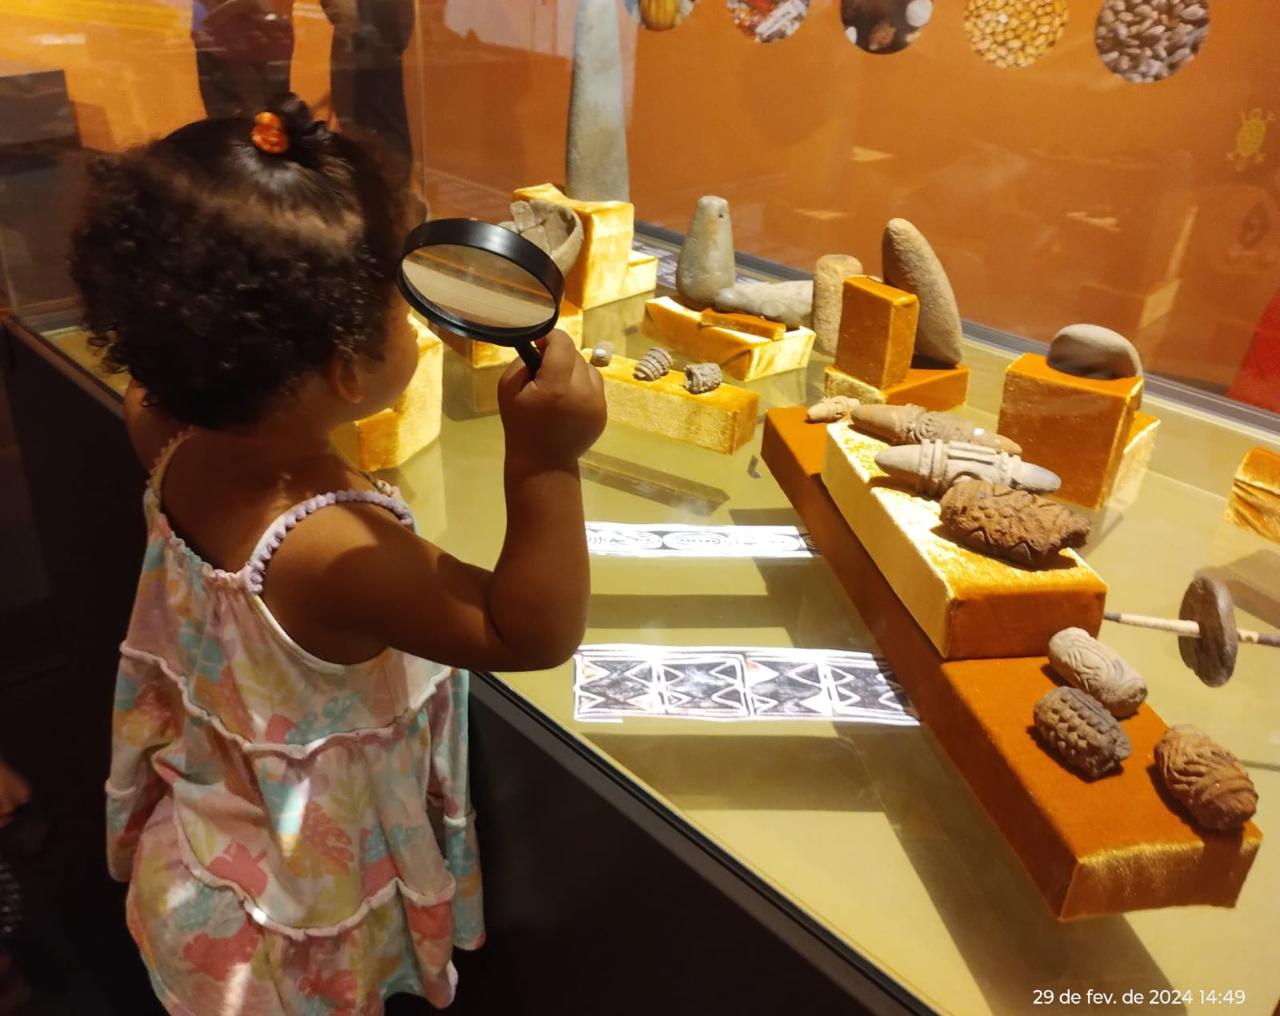 Read more about the article Prática em rede: O museu é das crianças